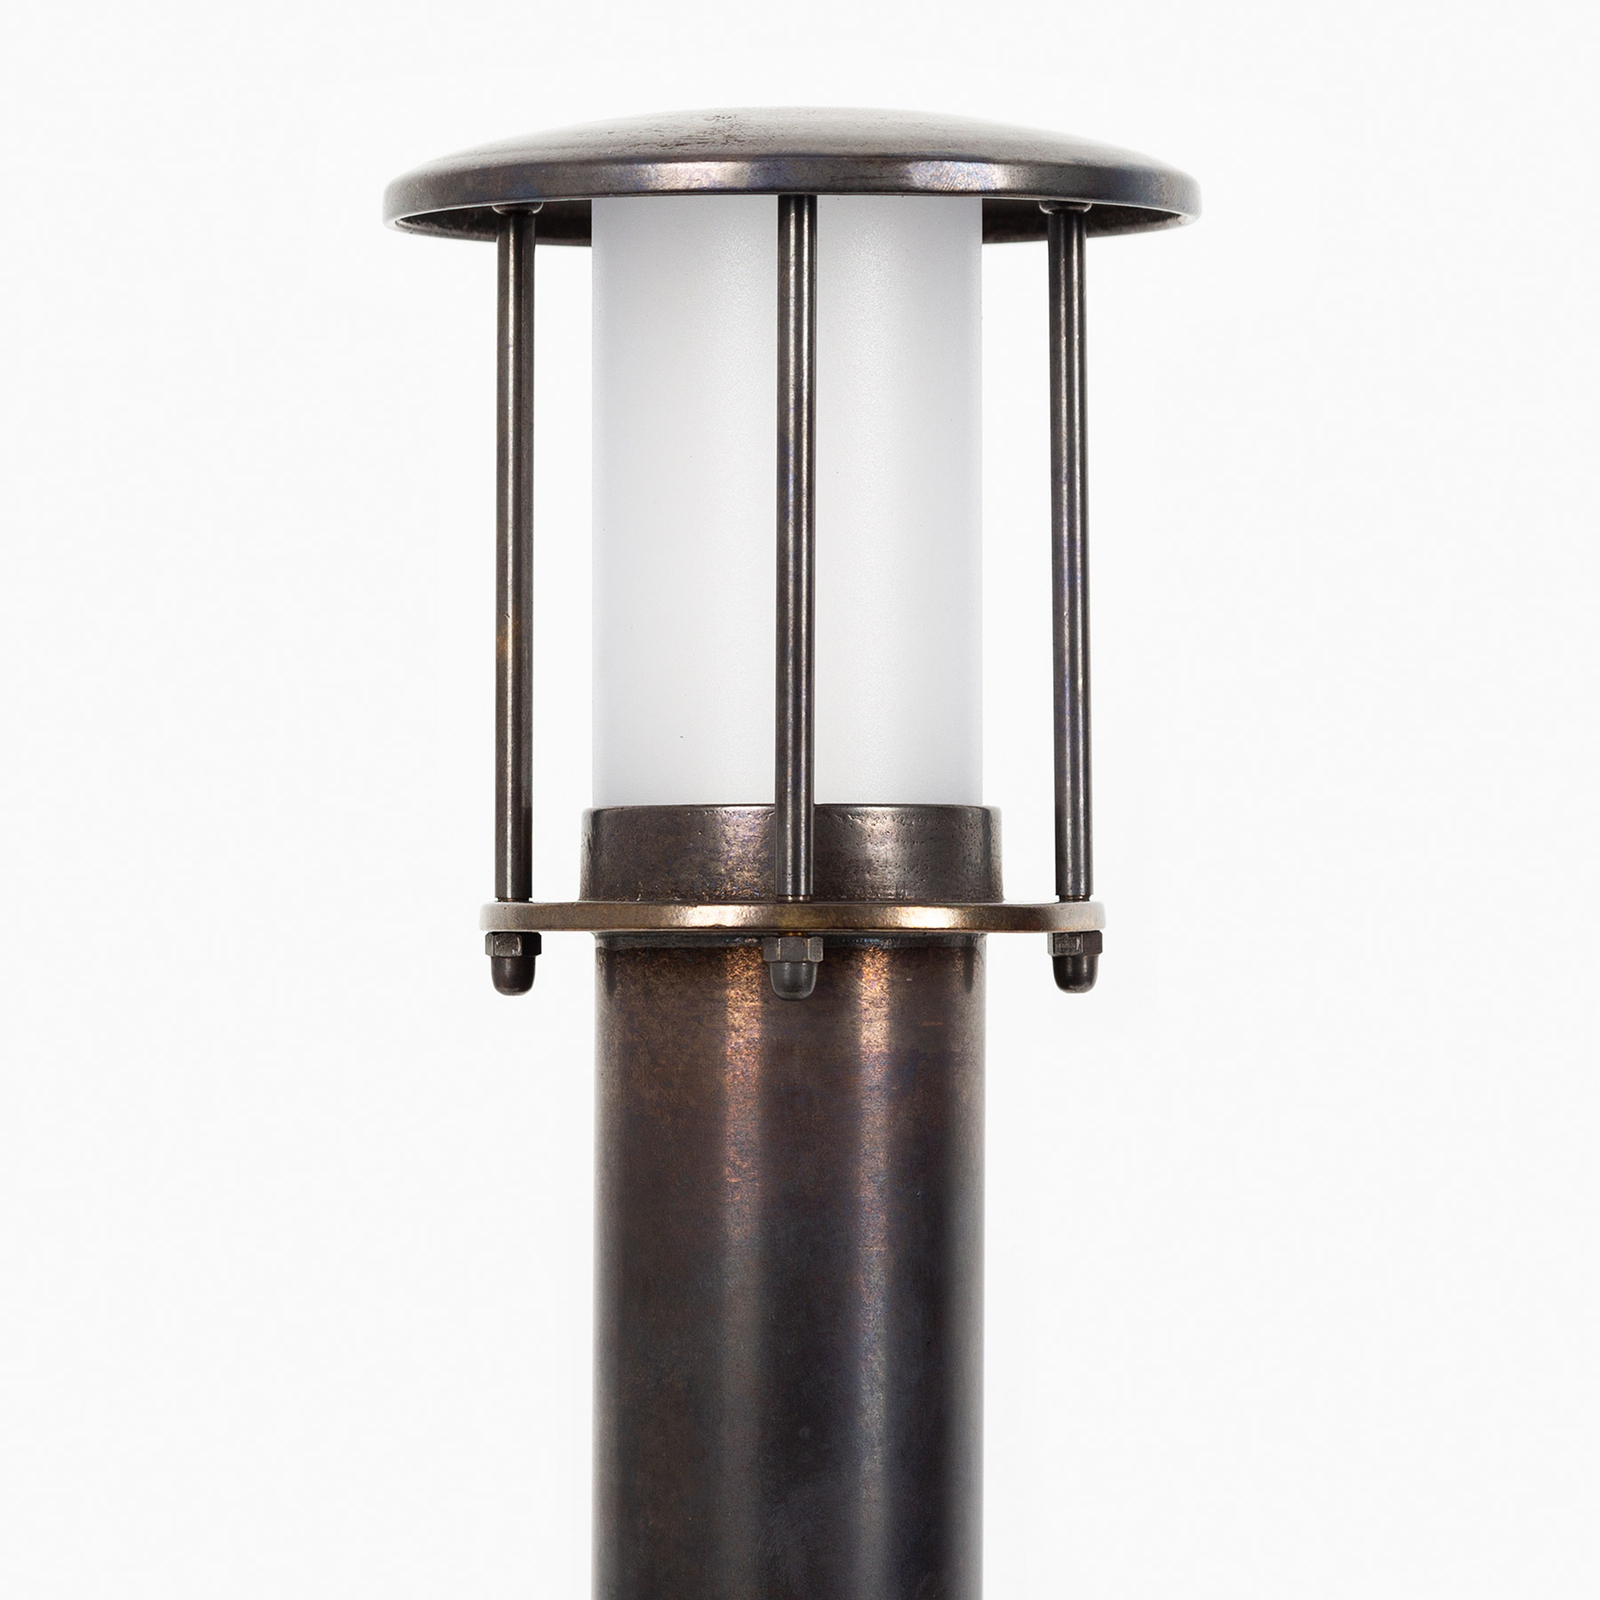 Wegelampe Resident 2 aus Messing, bronze